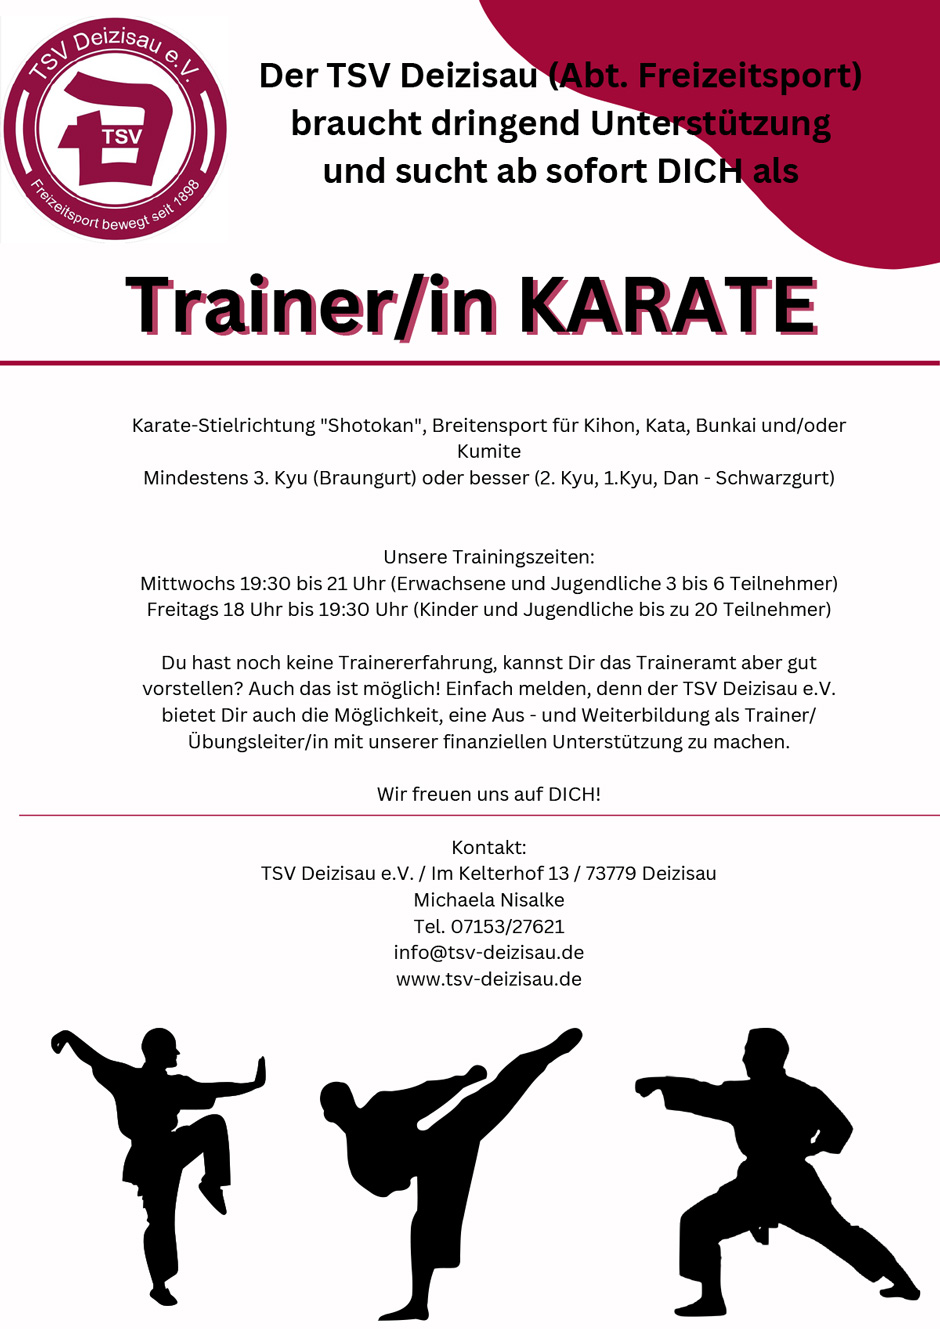 Helfer*innen für die Karateabteilung gesucht